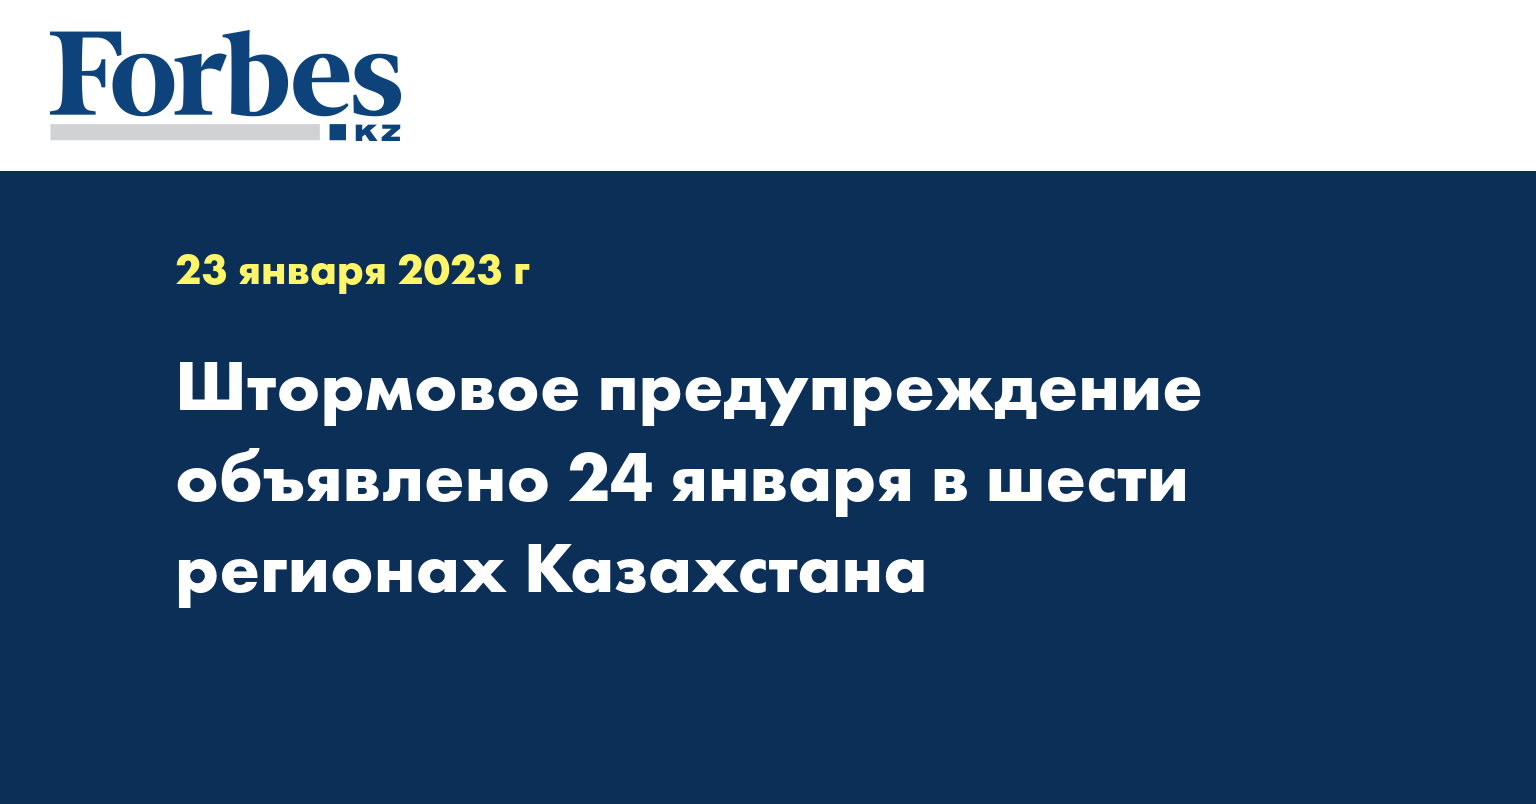 Штормовое предупреждение объявлено 24 января в шести регионах Казахстана